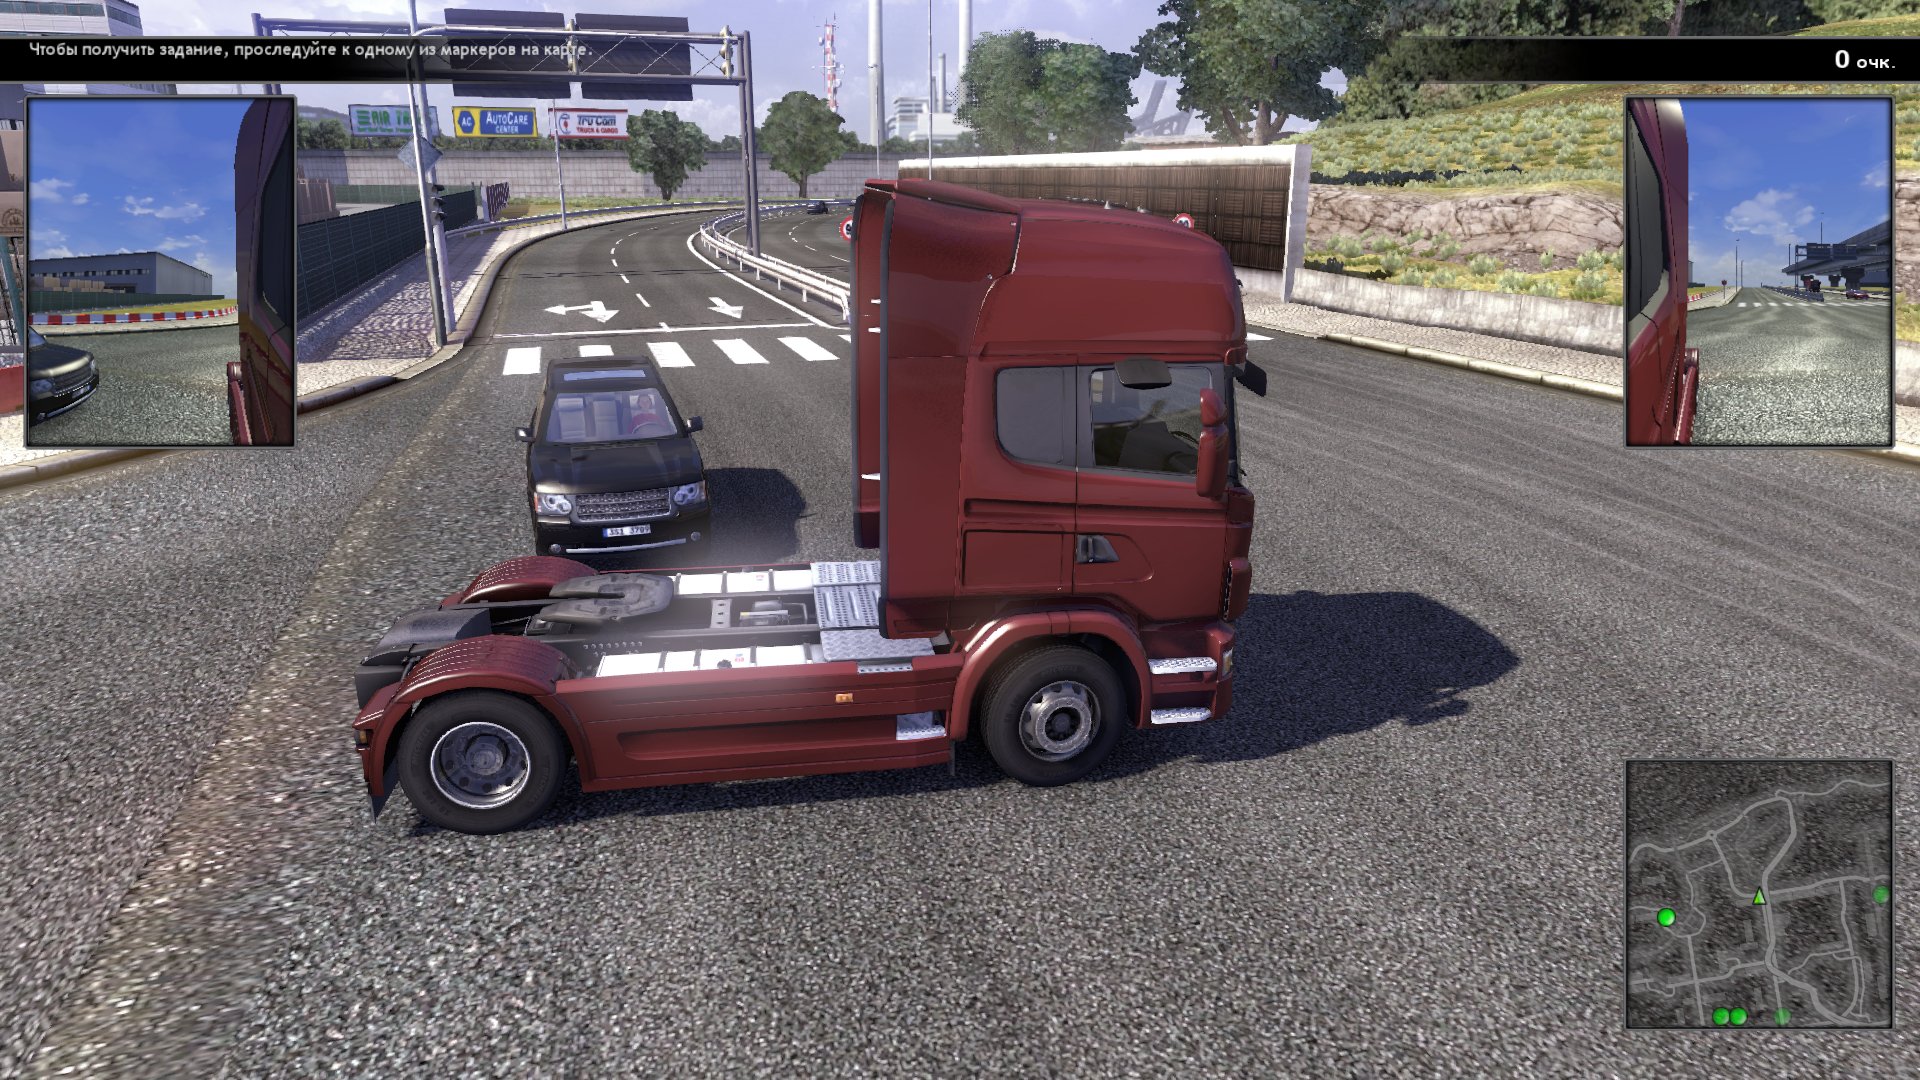 Игра труск симулятор. Игра Scania Truck Driving Simulator. Скания трак драйв симулятор. Scania Truck Driving Simulator 2. Scania.Truck Driving Simulator.v 1.5.0.